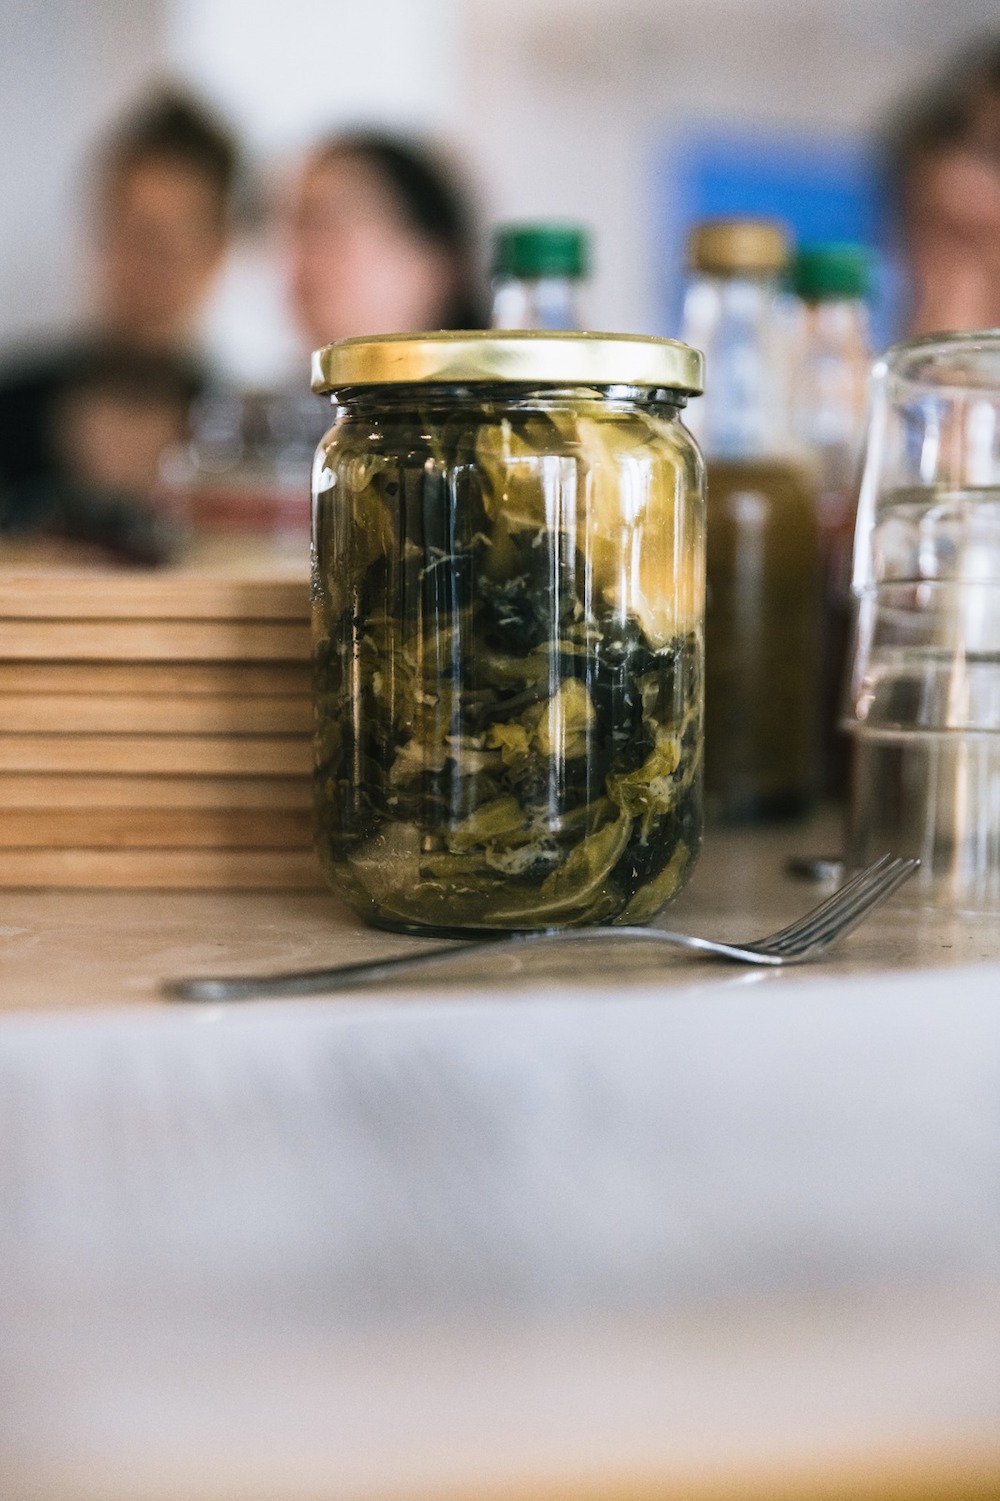 fermented kale kraut in glas